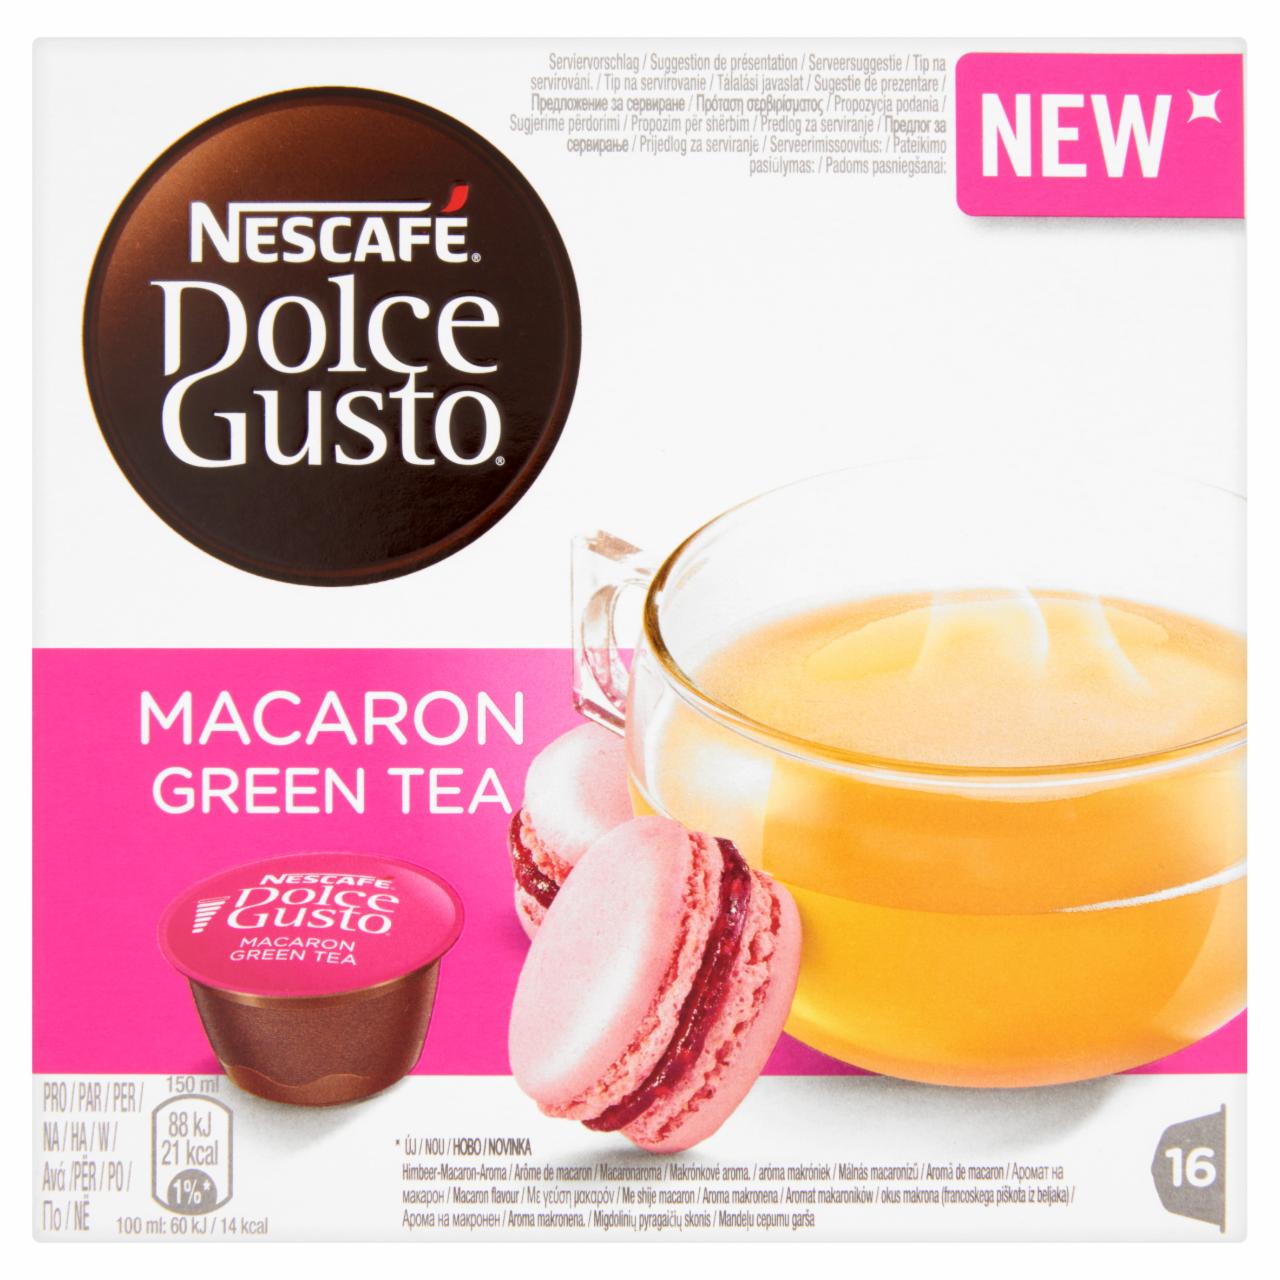 Képek - Nescafé Dolce Gusto Macaron Green Tea málnás macaronízű zöld tea italpor cukorral 16 db 84,8 g